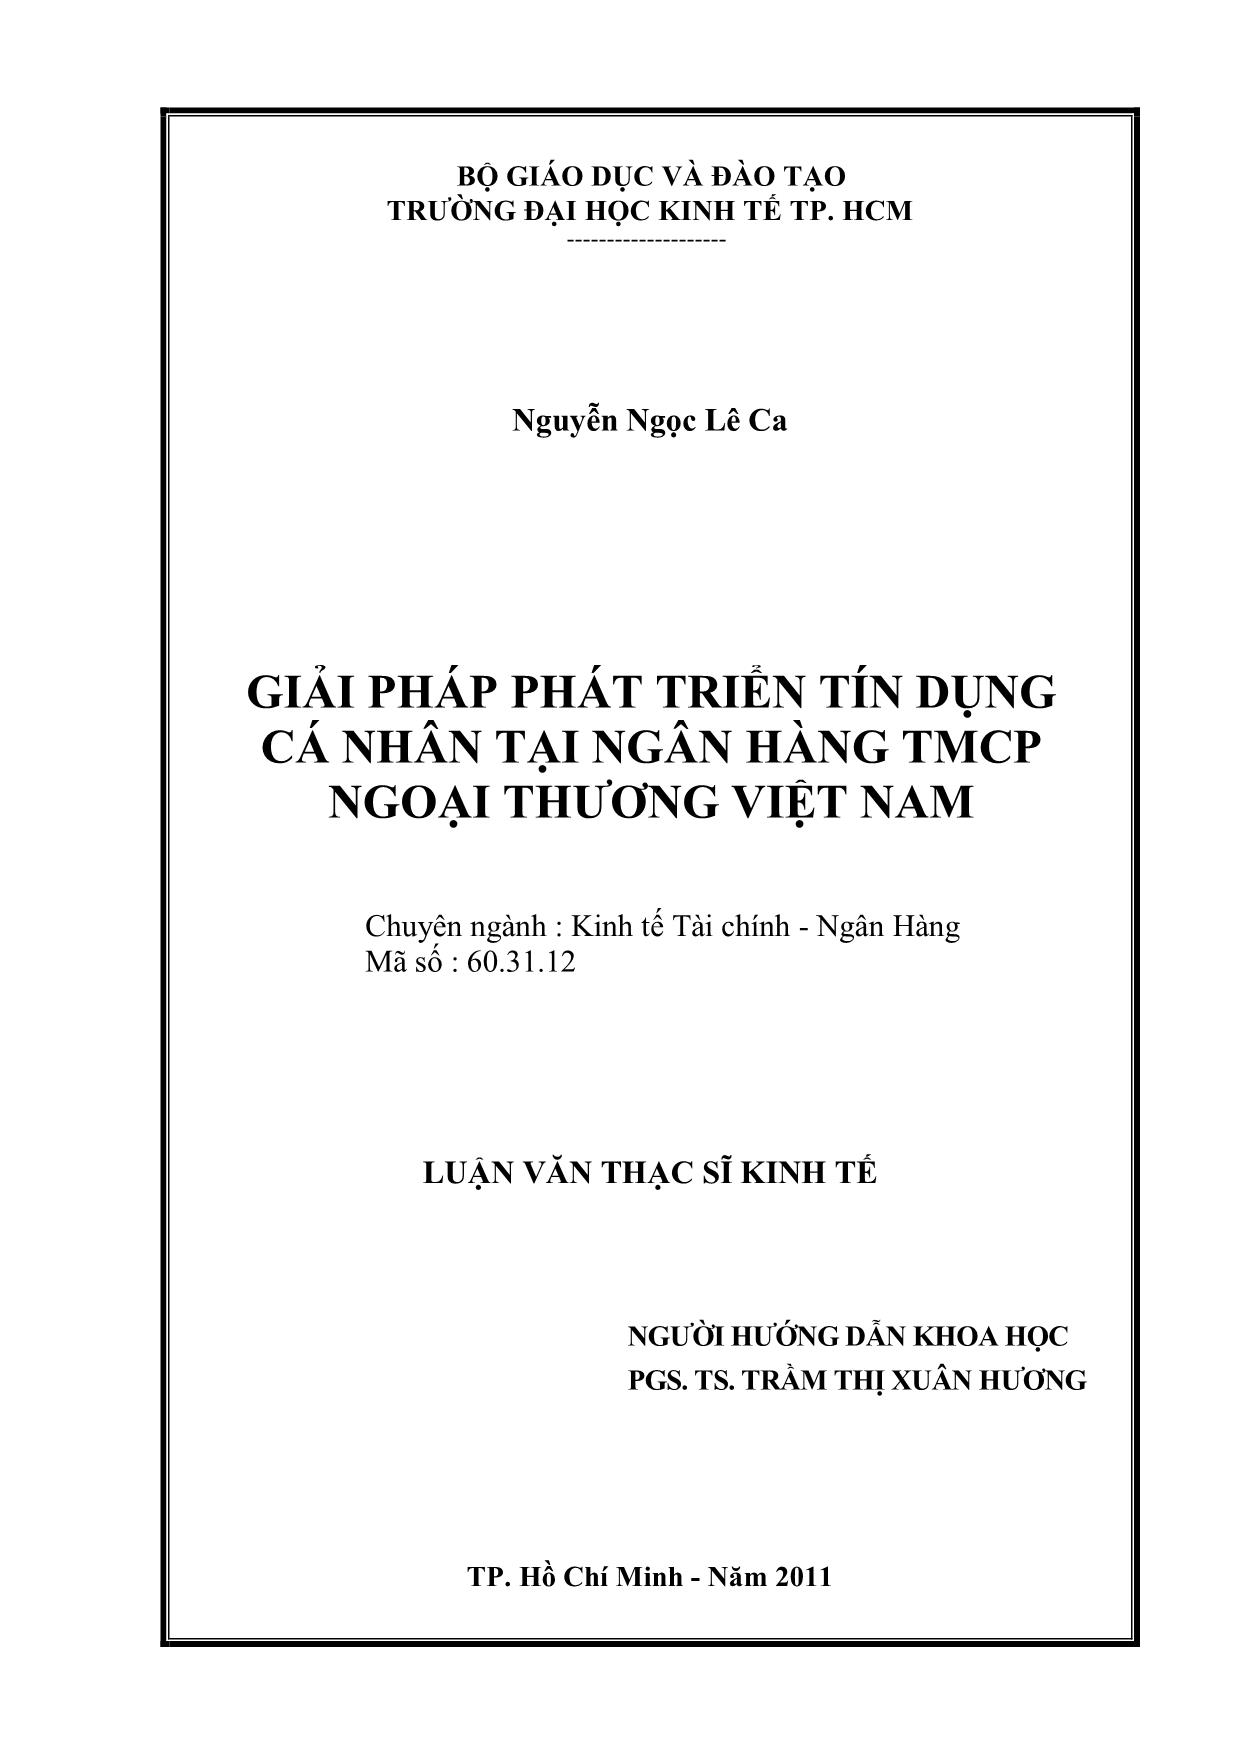 Luận văn Giải pháp phát triển tín dụng cá nhân tại ngân hàng thương mại cổ phần ngoại thương Việt Nam trang 2